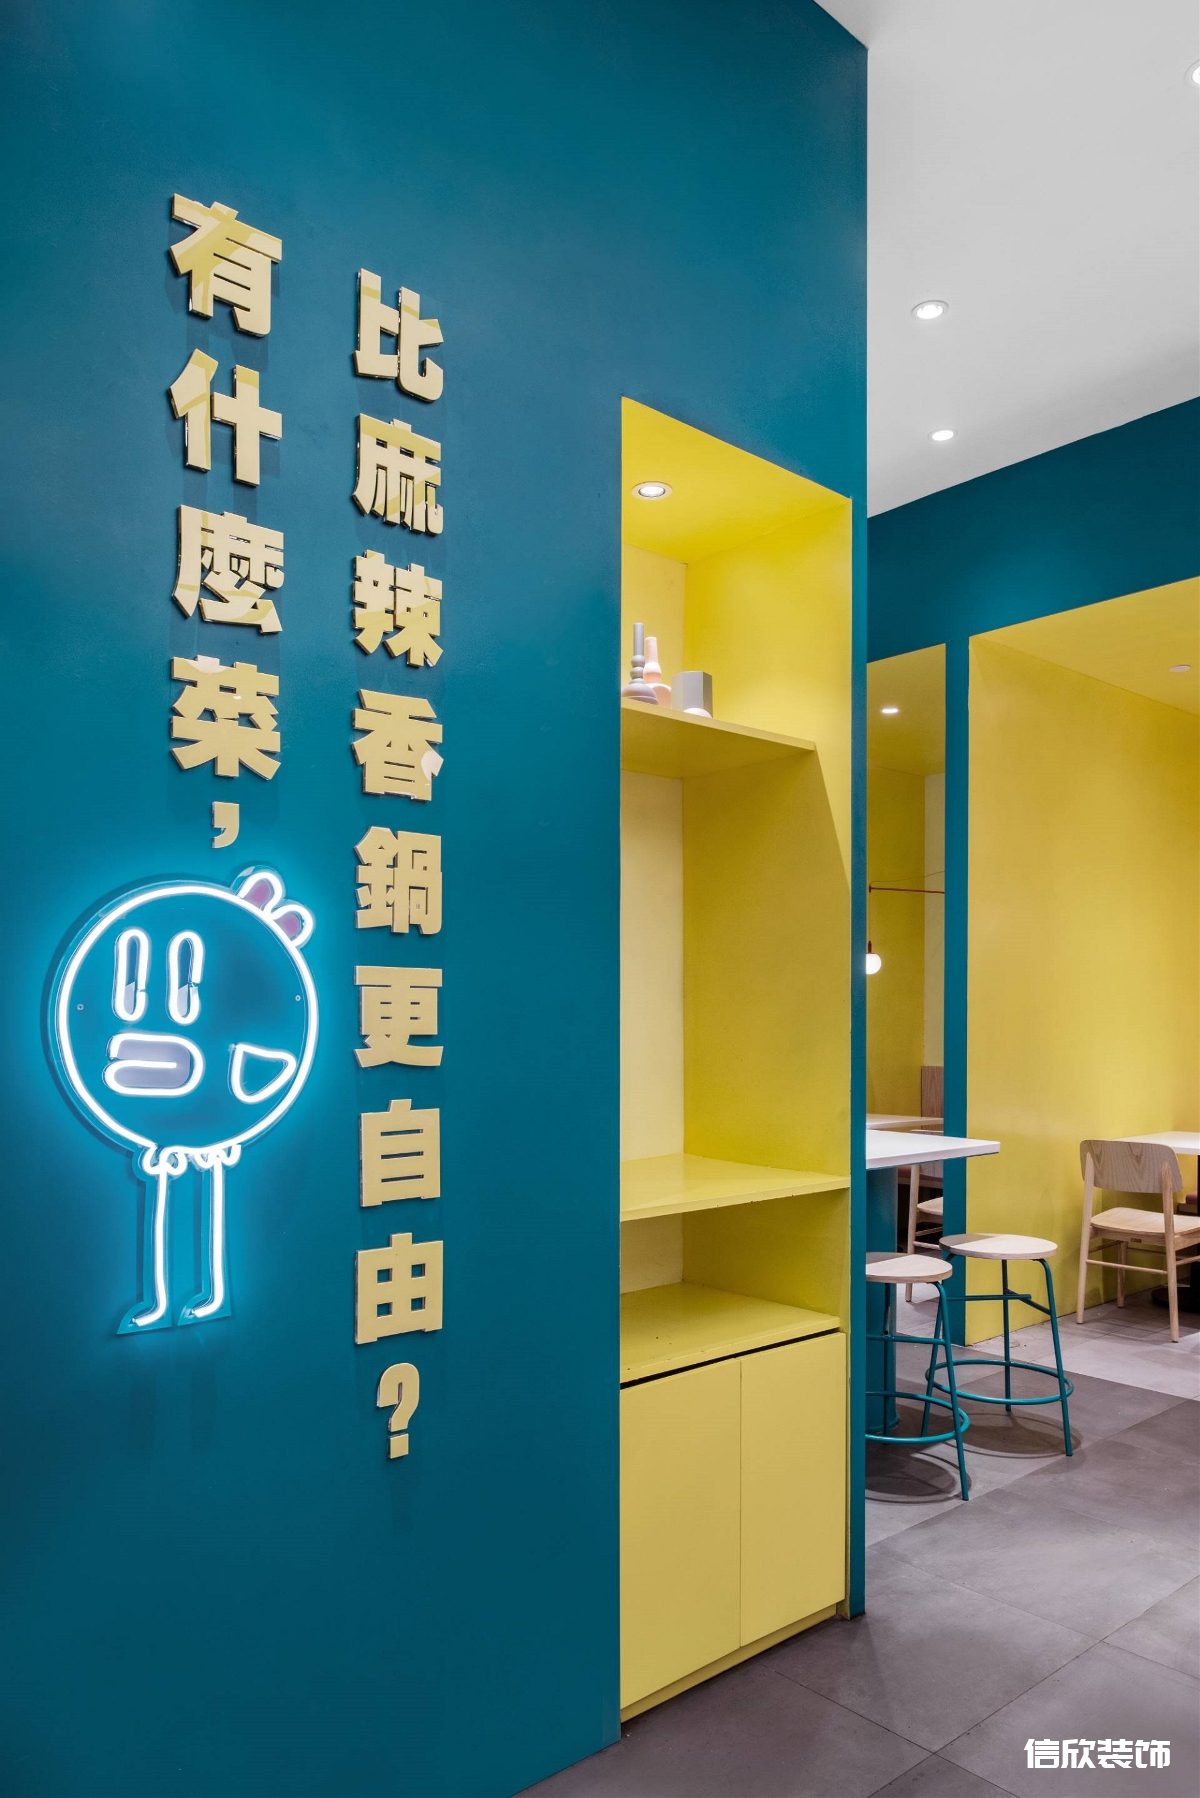 福田购物公园蓝色麻辣小快餐厅入户墙面广告词装修设计